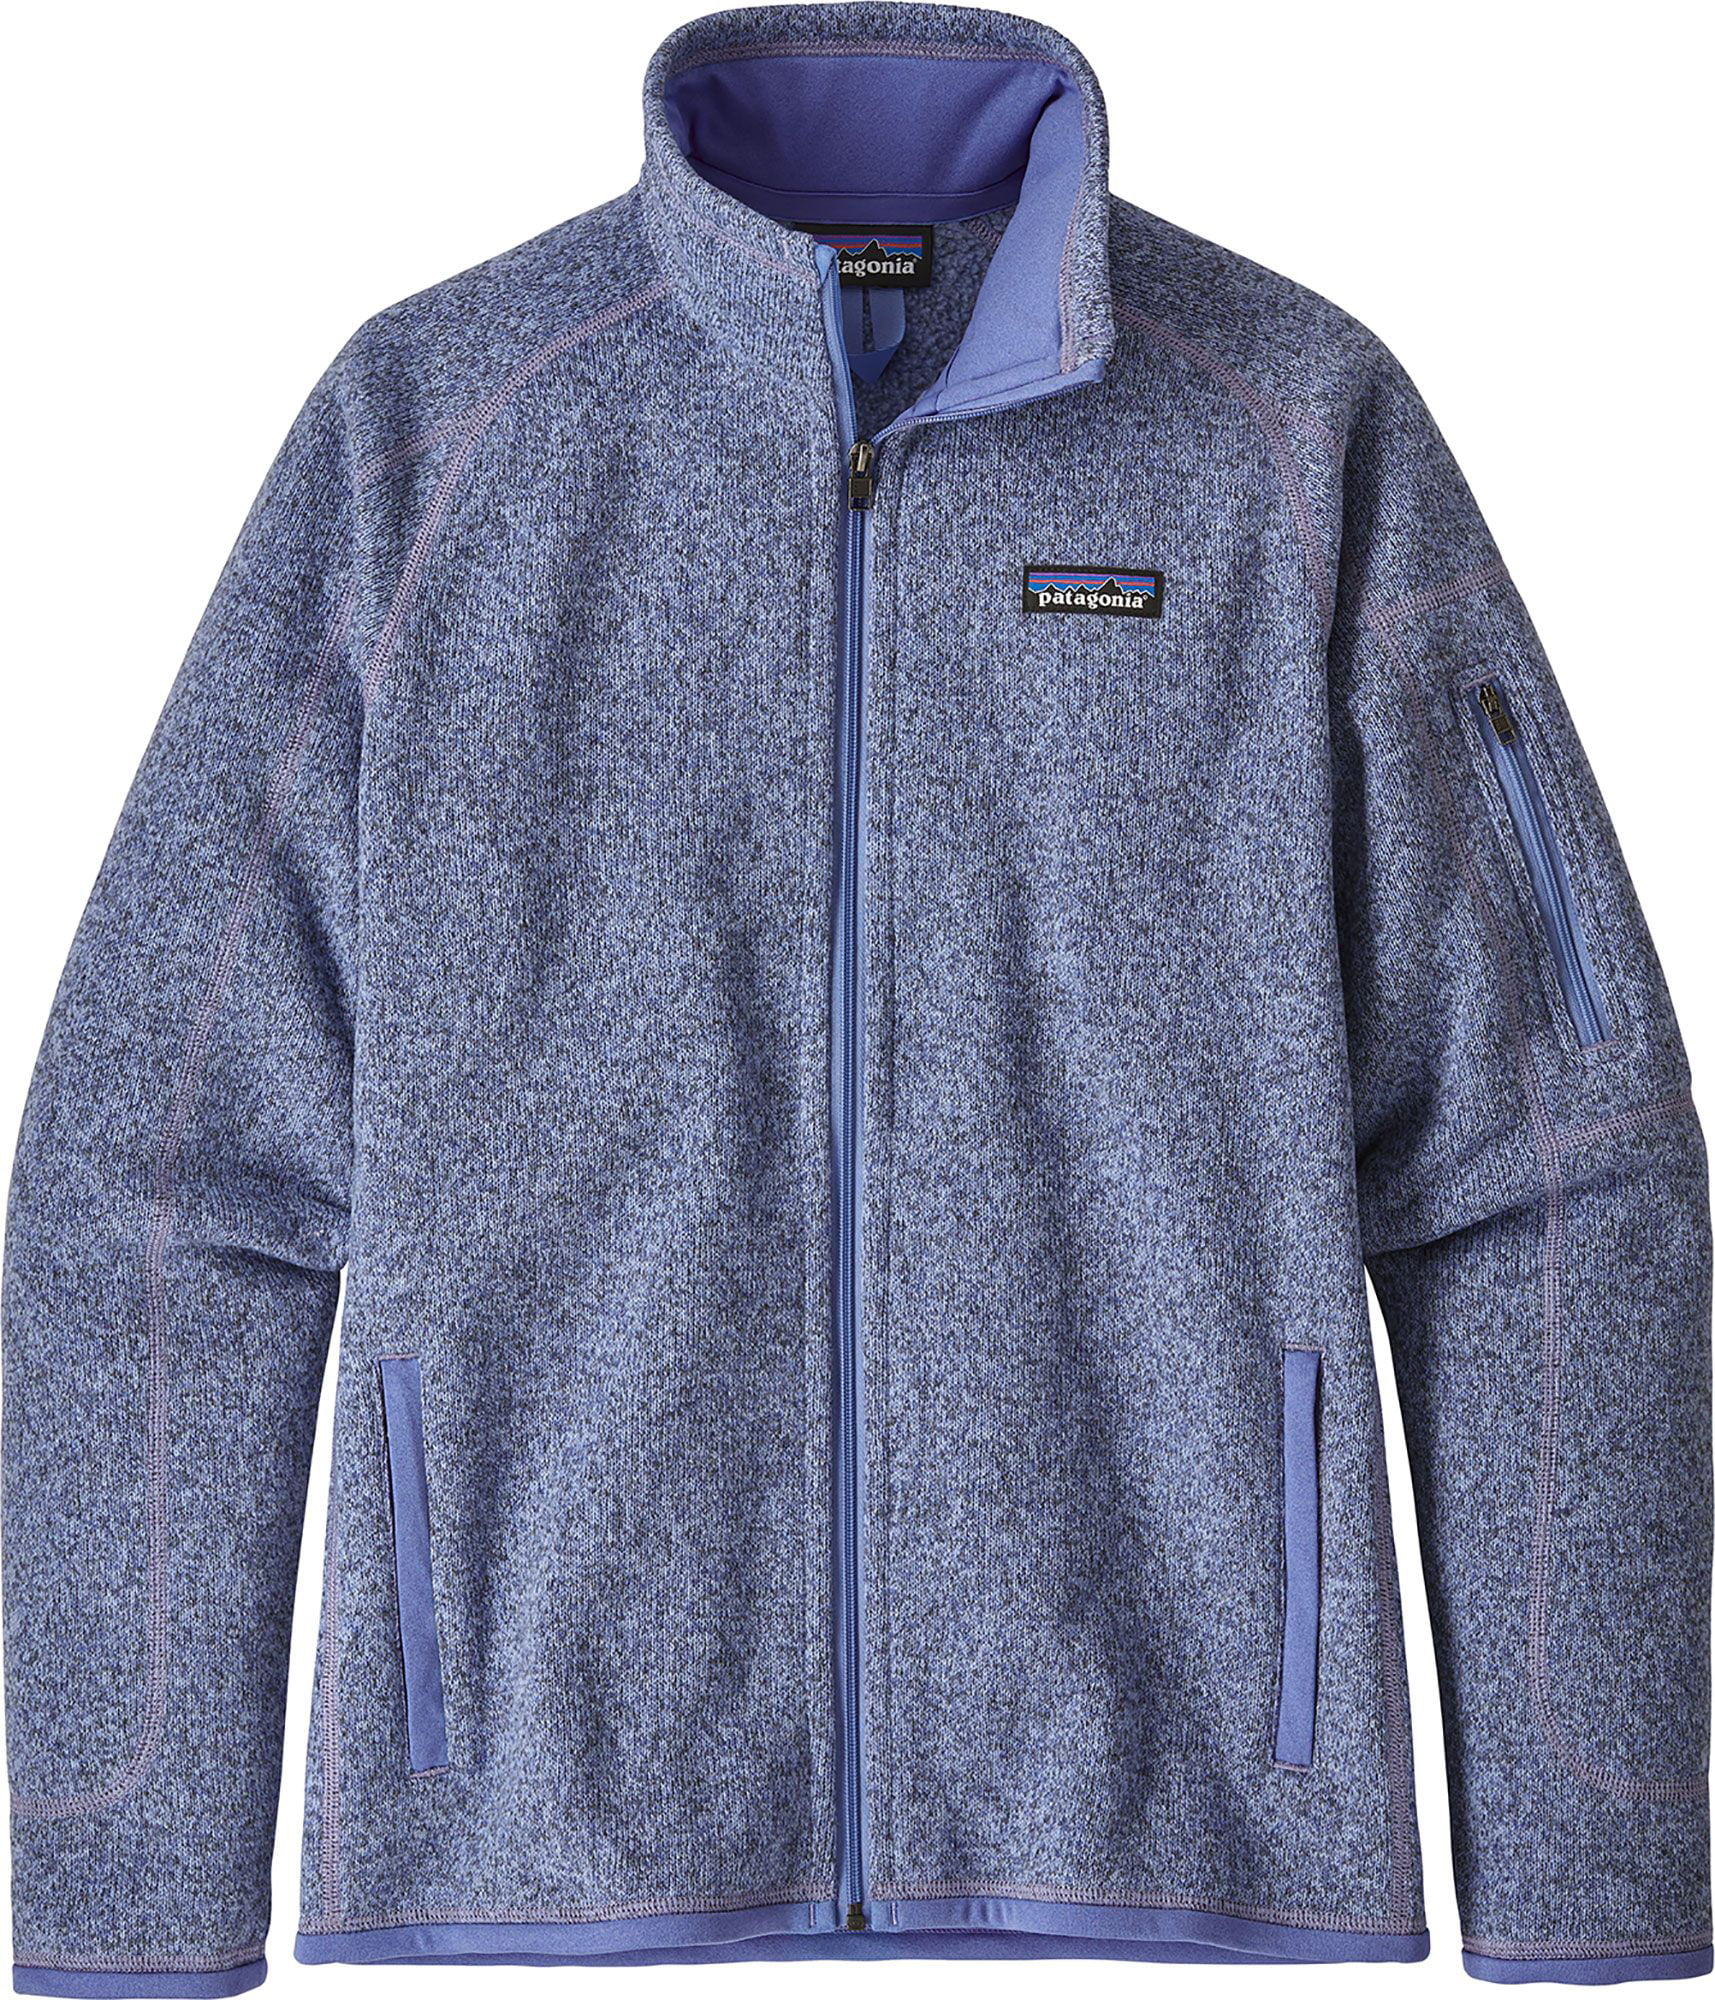 Patagonia - Patagonia Women's Better Sweater Fleece Jacket - Walmart ...